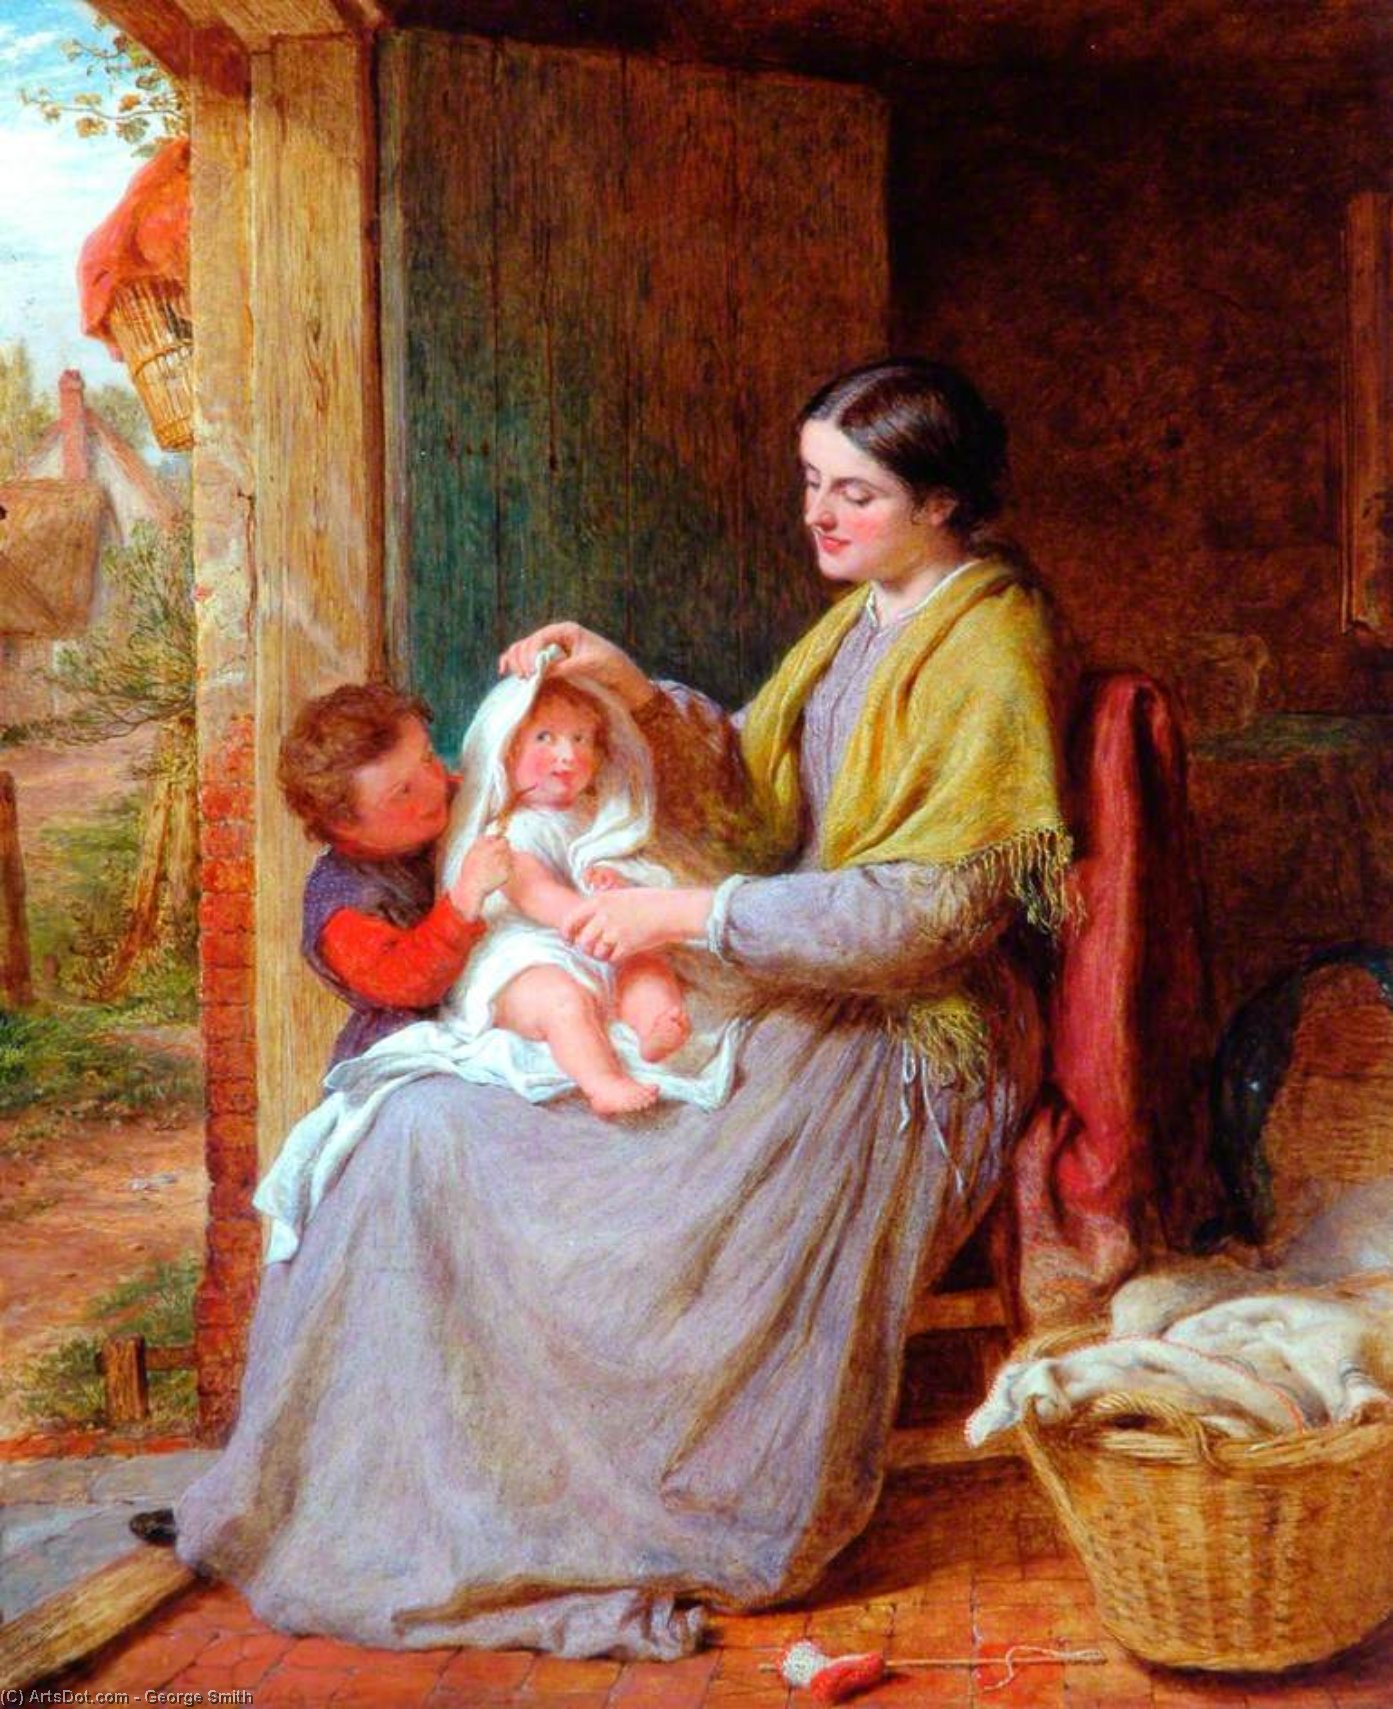 WikiOO.org - Εγκυκλοπαίδεια Καλών Τεχνών - Ζωγραφική, έργα τέχνης George Smith - Playing With Baby